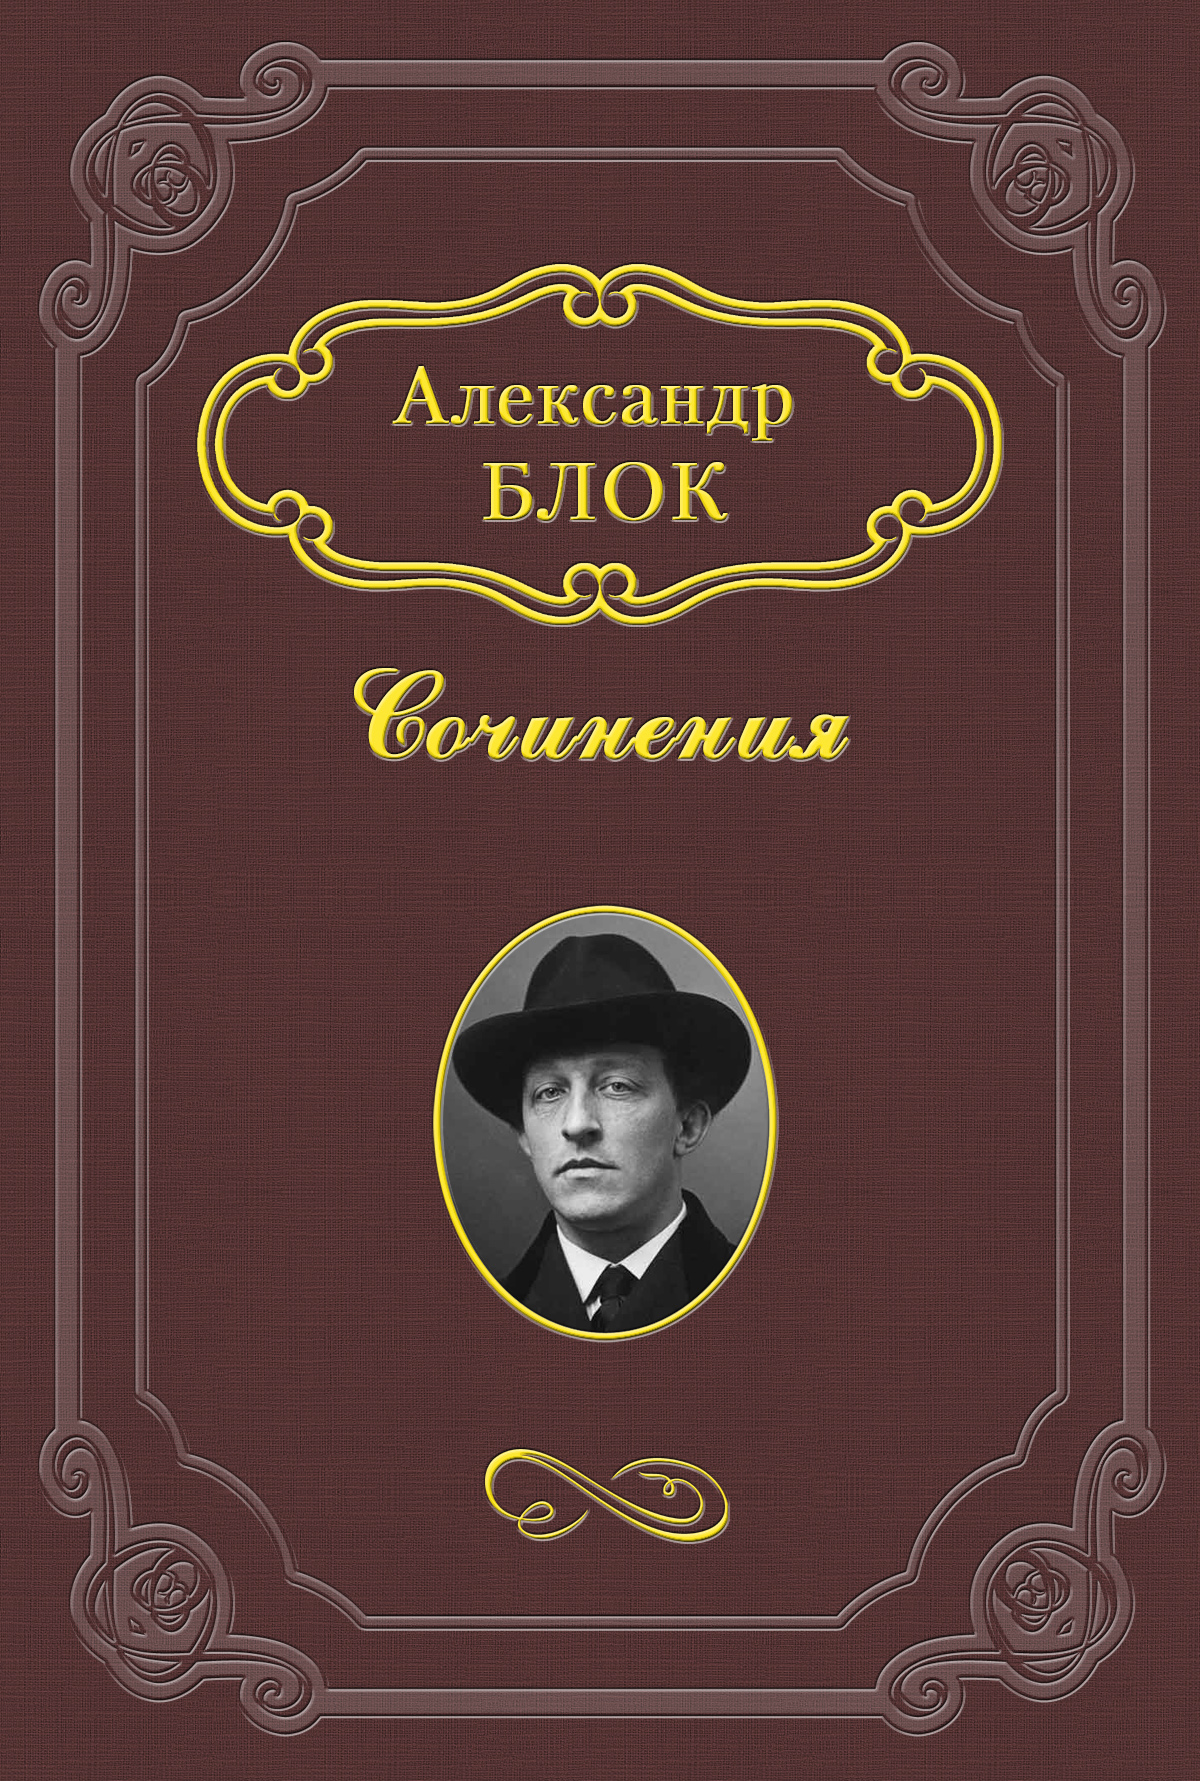 Книга Дитя Гоголя из серии , созданная Александр Блок, может относится к жанру Критика. Стоимость книги Дитя Гоголя  с идентификатором 3260005 составляет 5.99 руб.